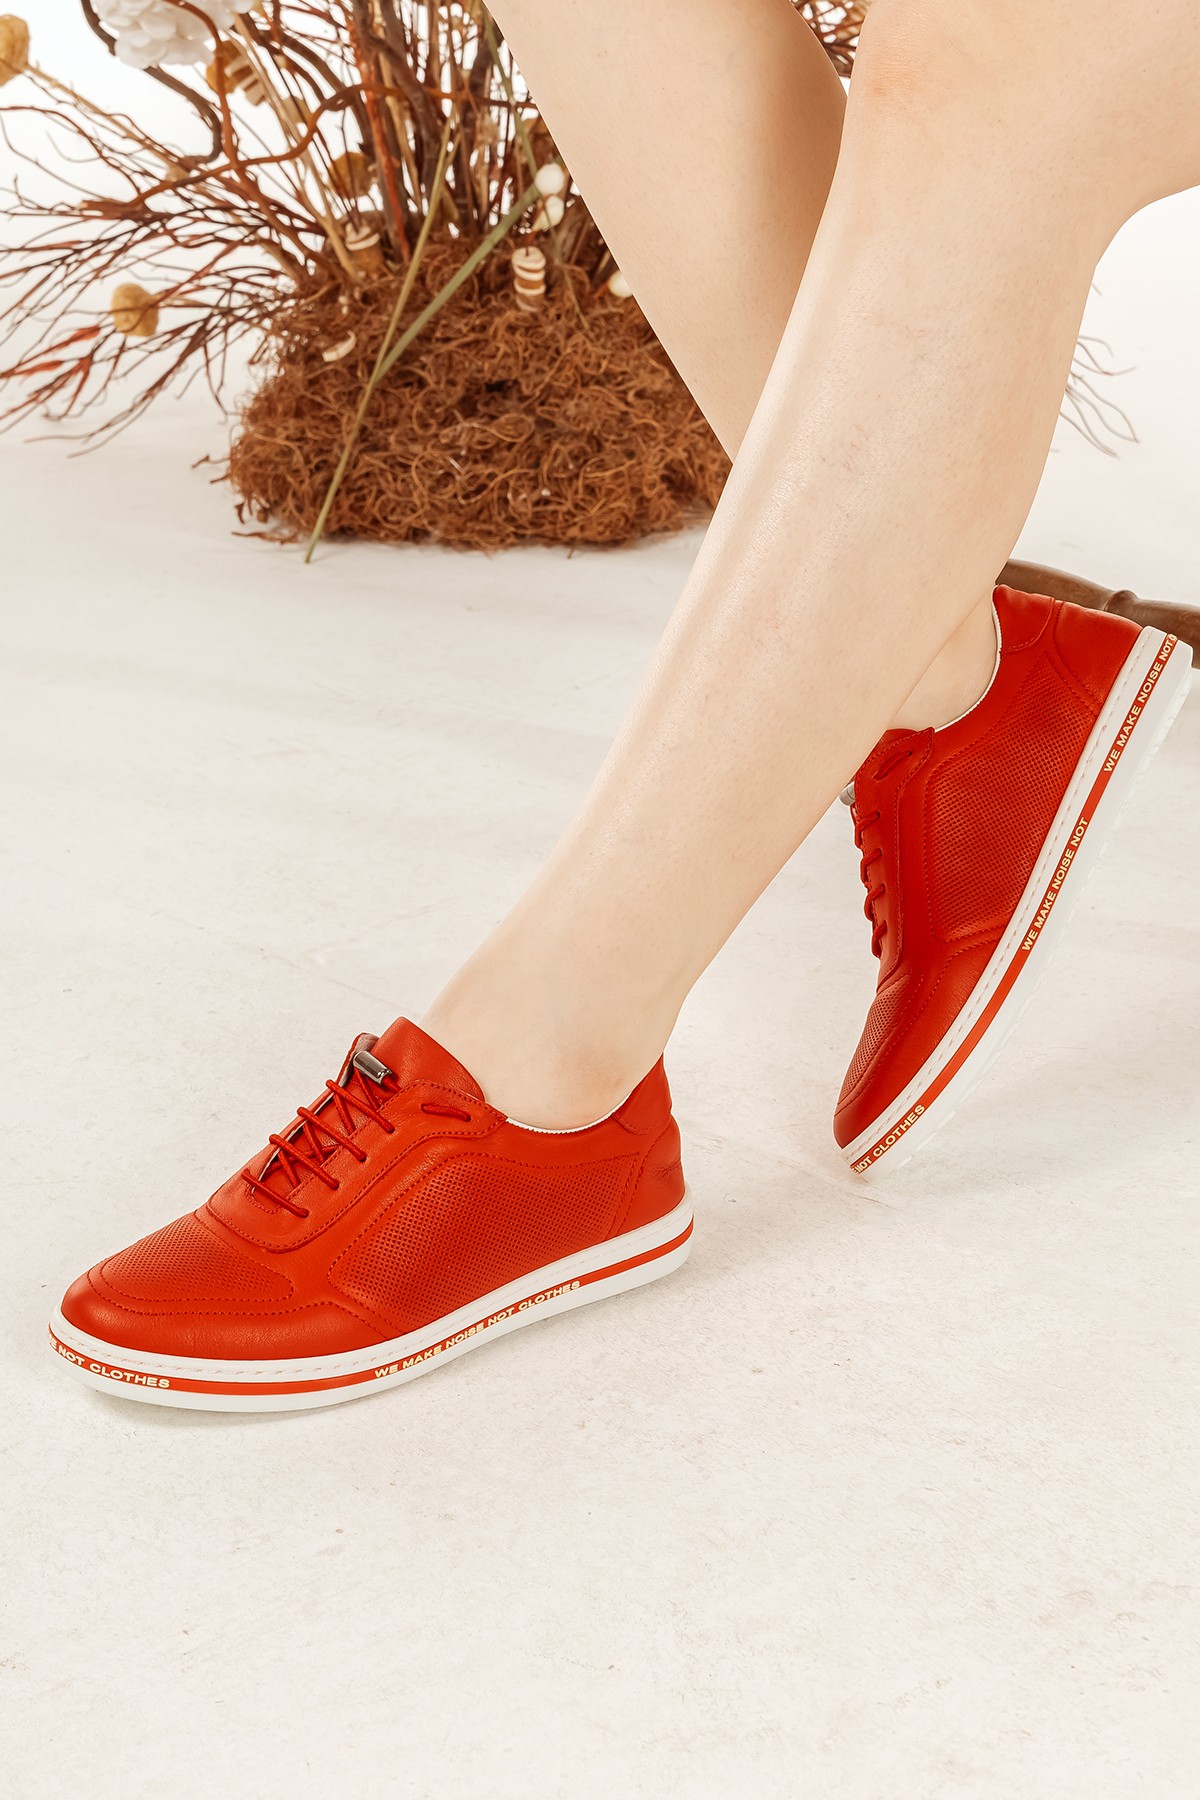 Cooliza Hakiki Deri Lastik Bağcıklı Tabanı Yazı Detaylı Rahat Kadın Günlük Casual Ayakkabı - Kırmızı